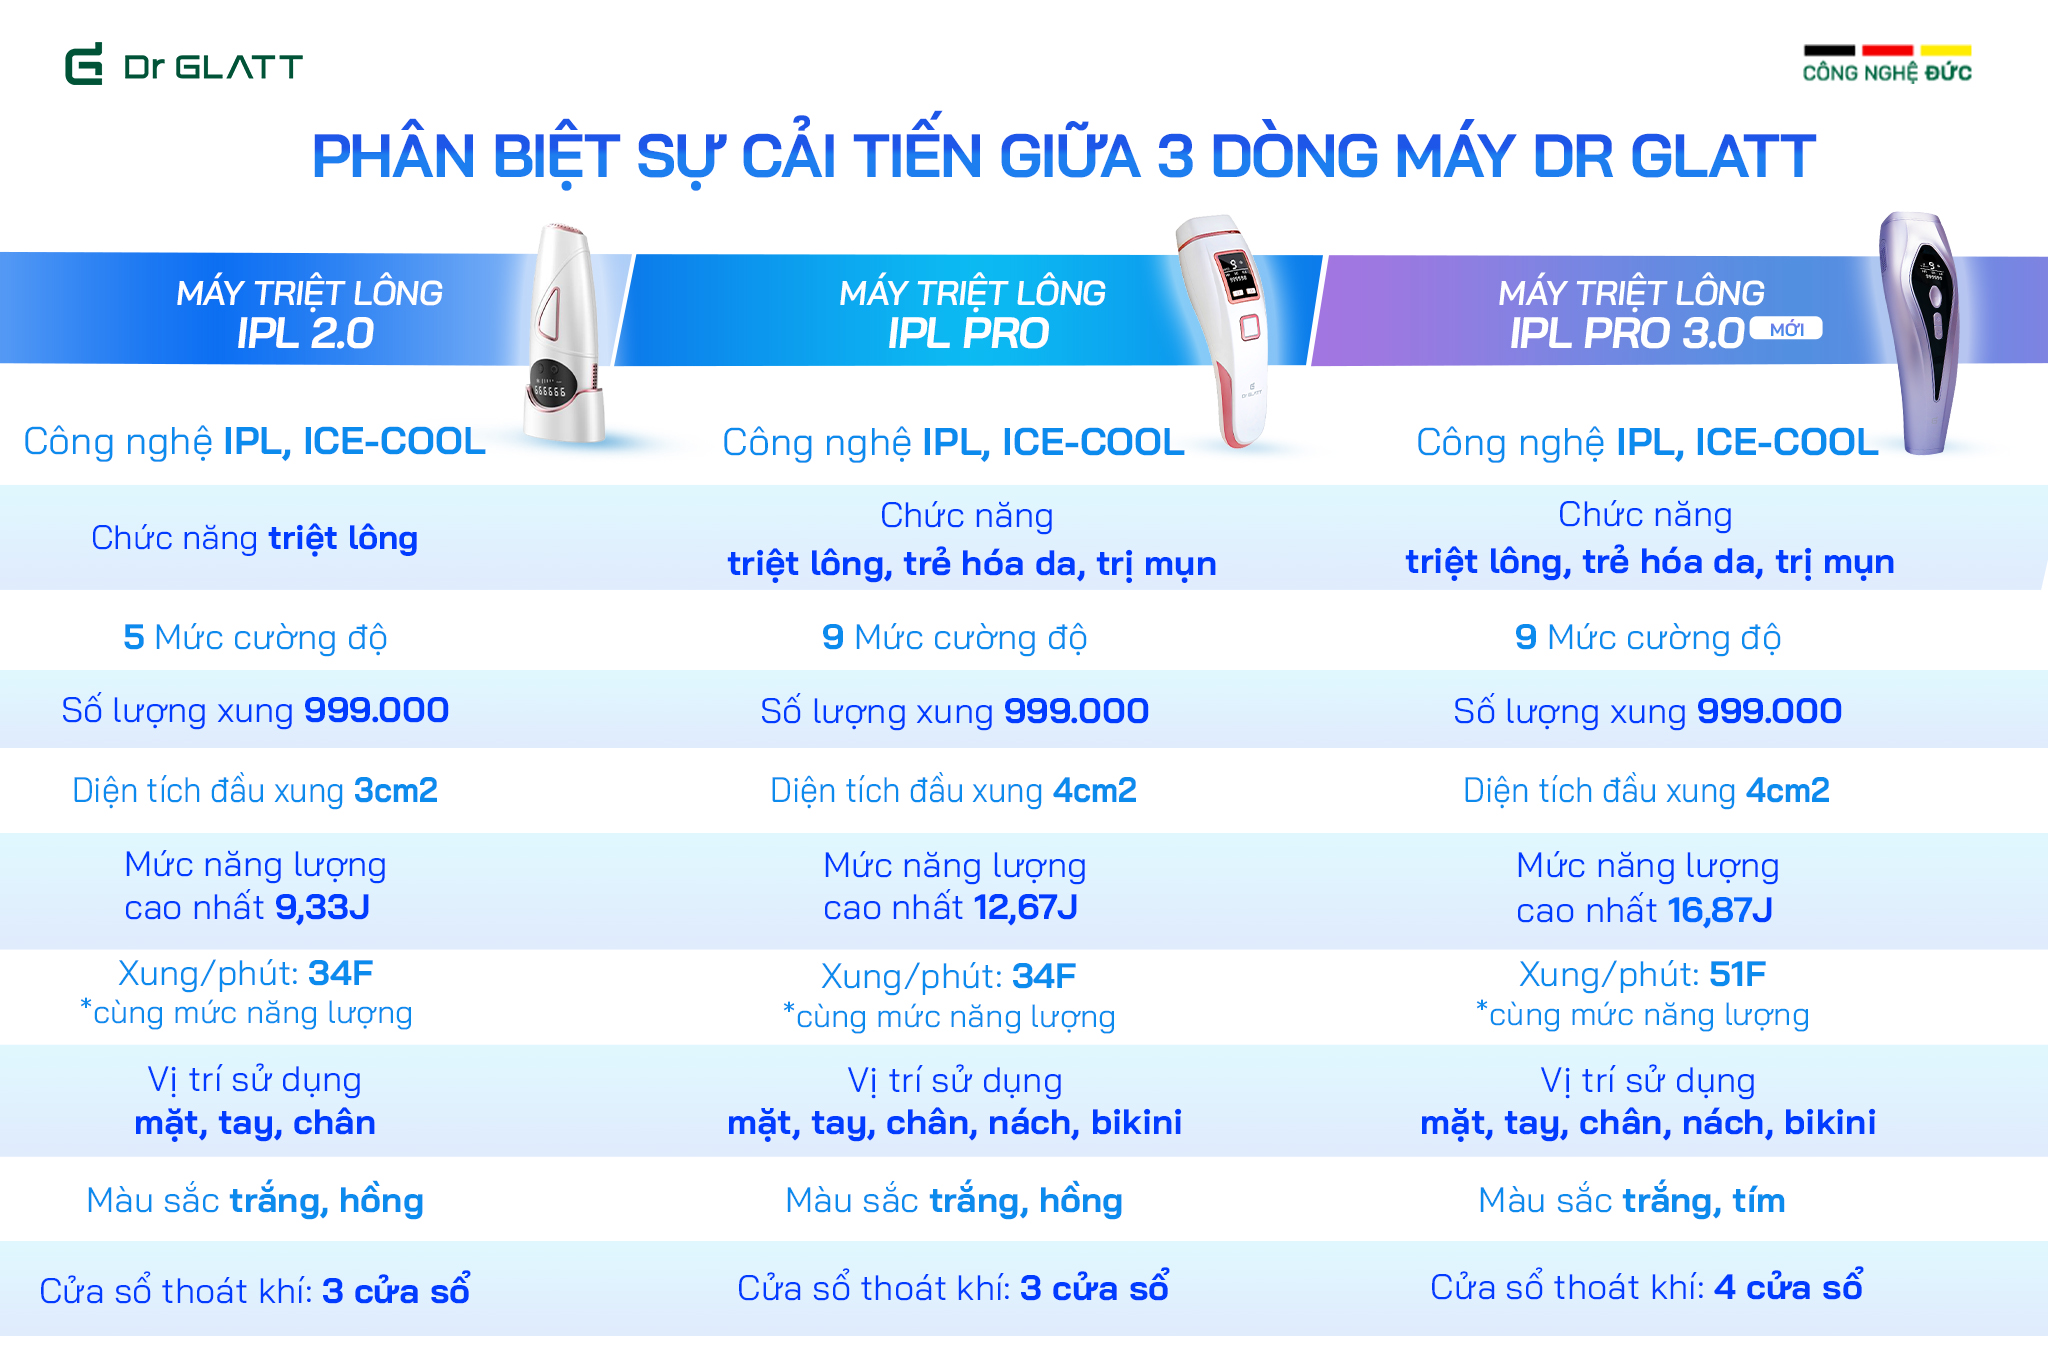 Máy triệt lông đa năng DR GLATT IPL PRO 3.0 (NEW) - Hàng Chính Hãng